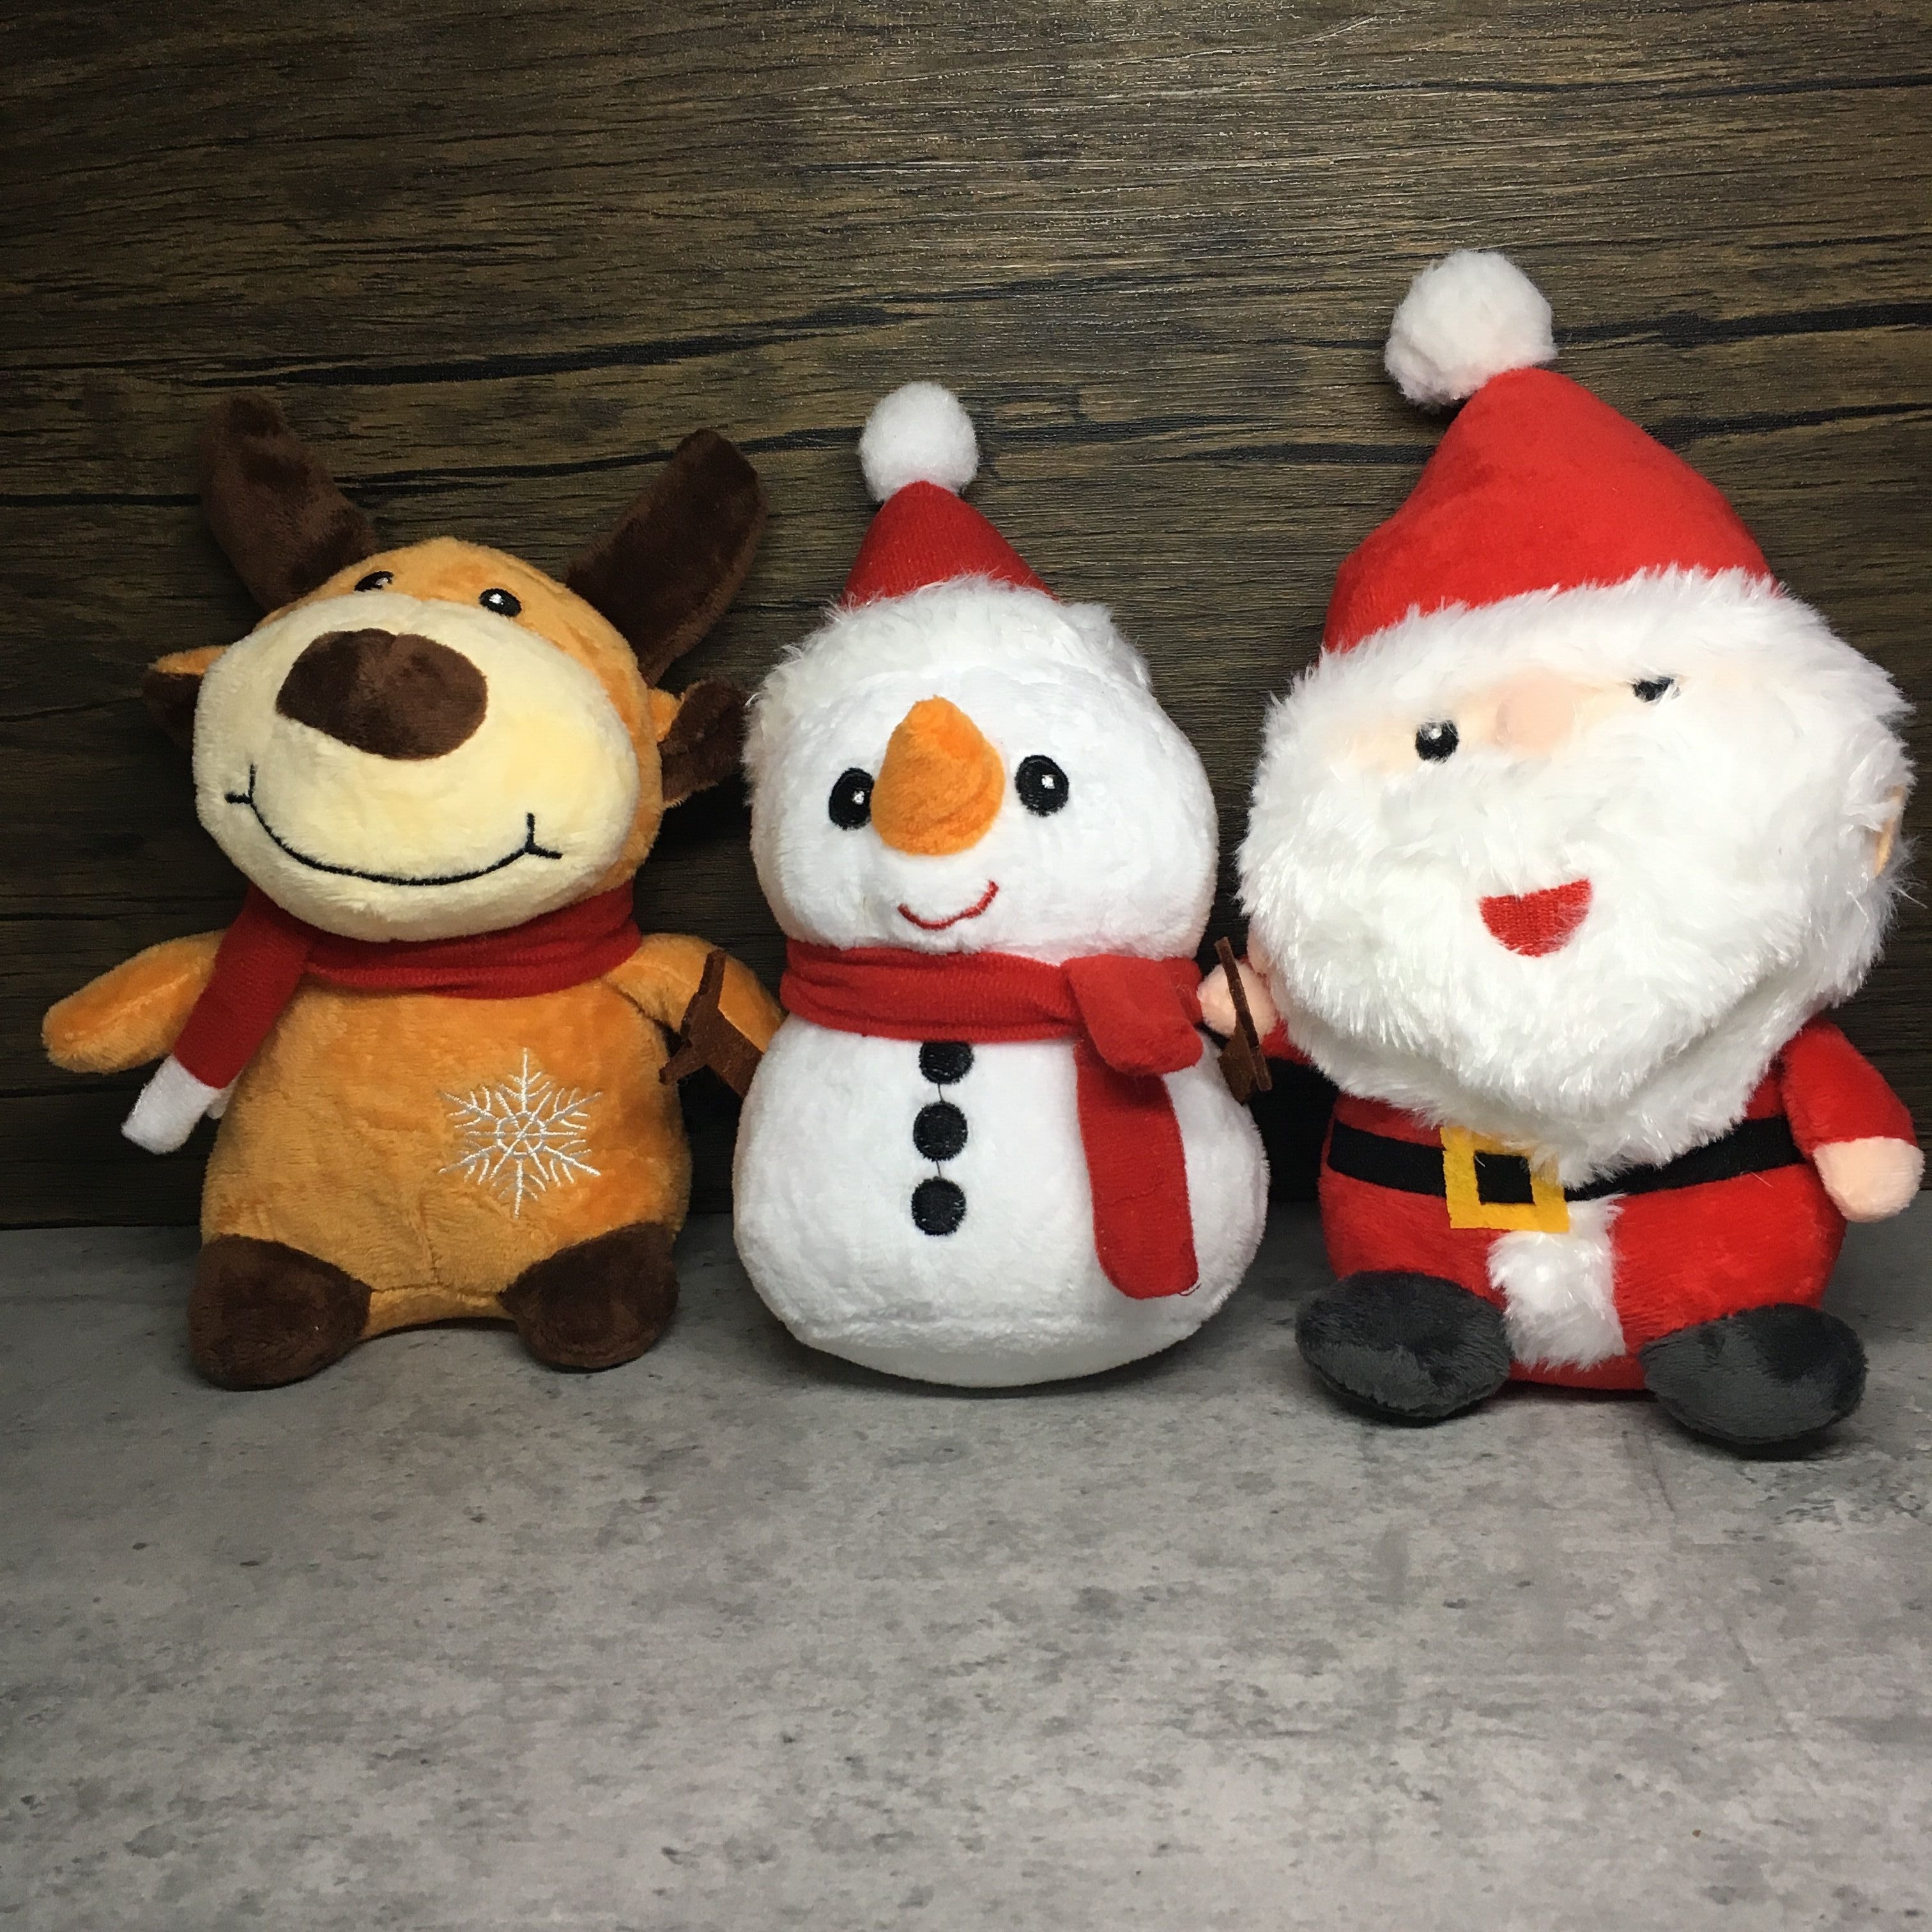 Bluey Noël Calendrier de l'Avent Boîte-cadeau Jouets pour enfants 24pcs  Anime Personnage Poupée Compte À Rebours Noël 24 Jours Cadeaux Surprise